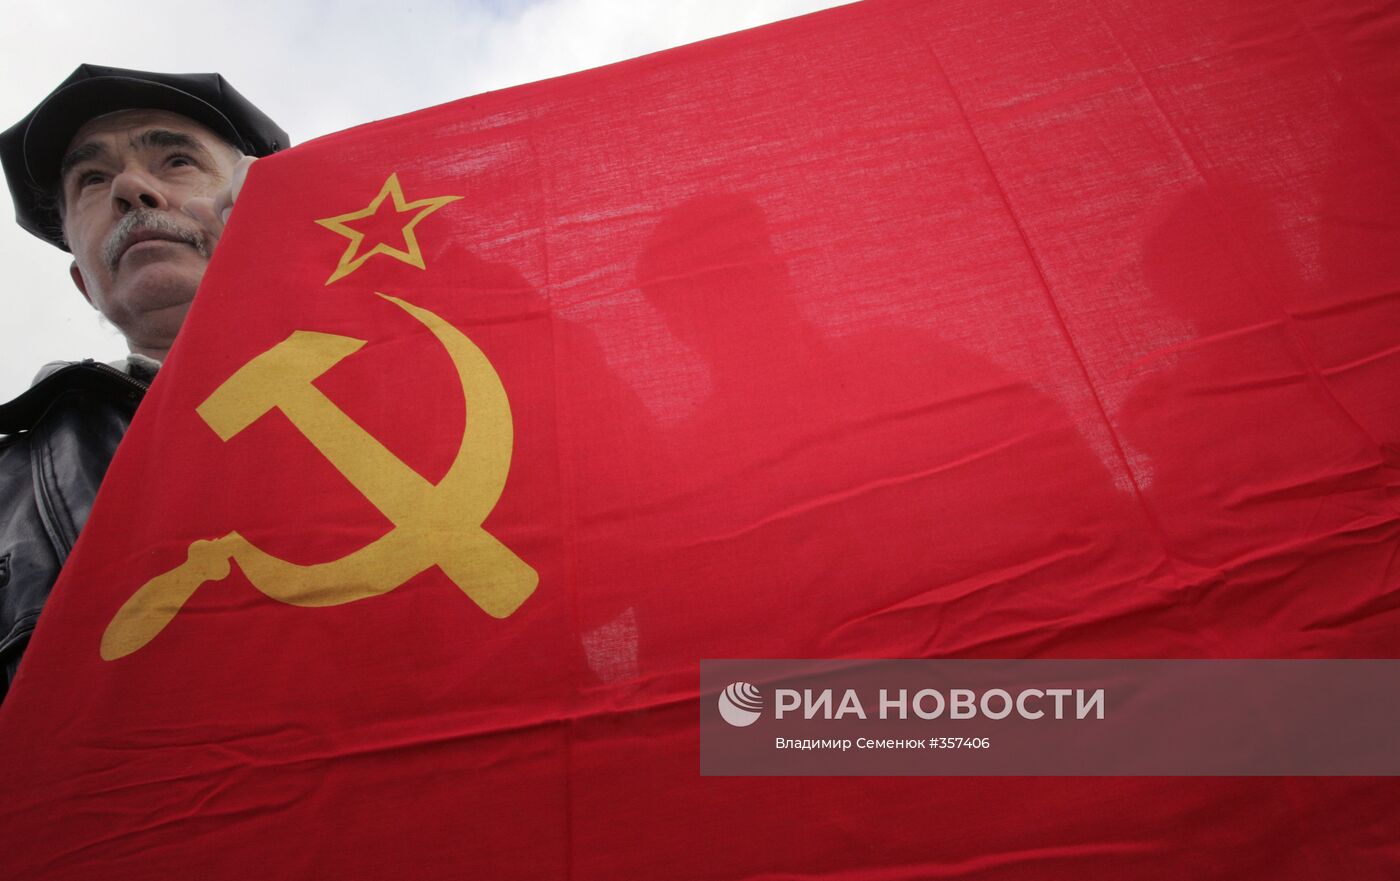 Коммунисты празднуют 91-ю годовщину Октябрьской революции